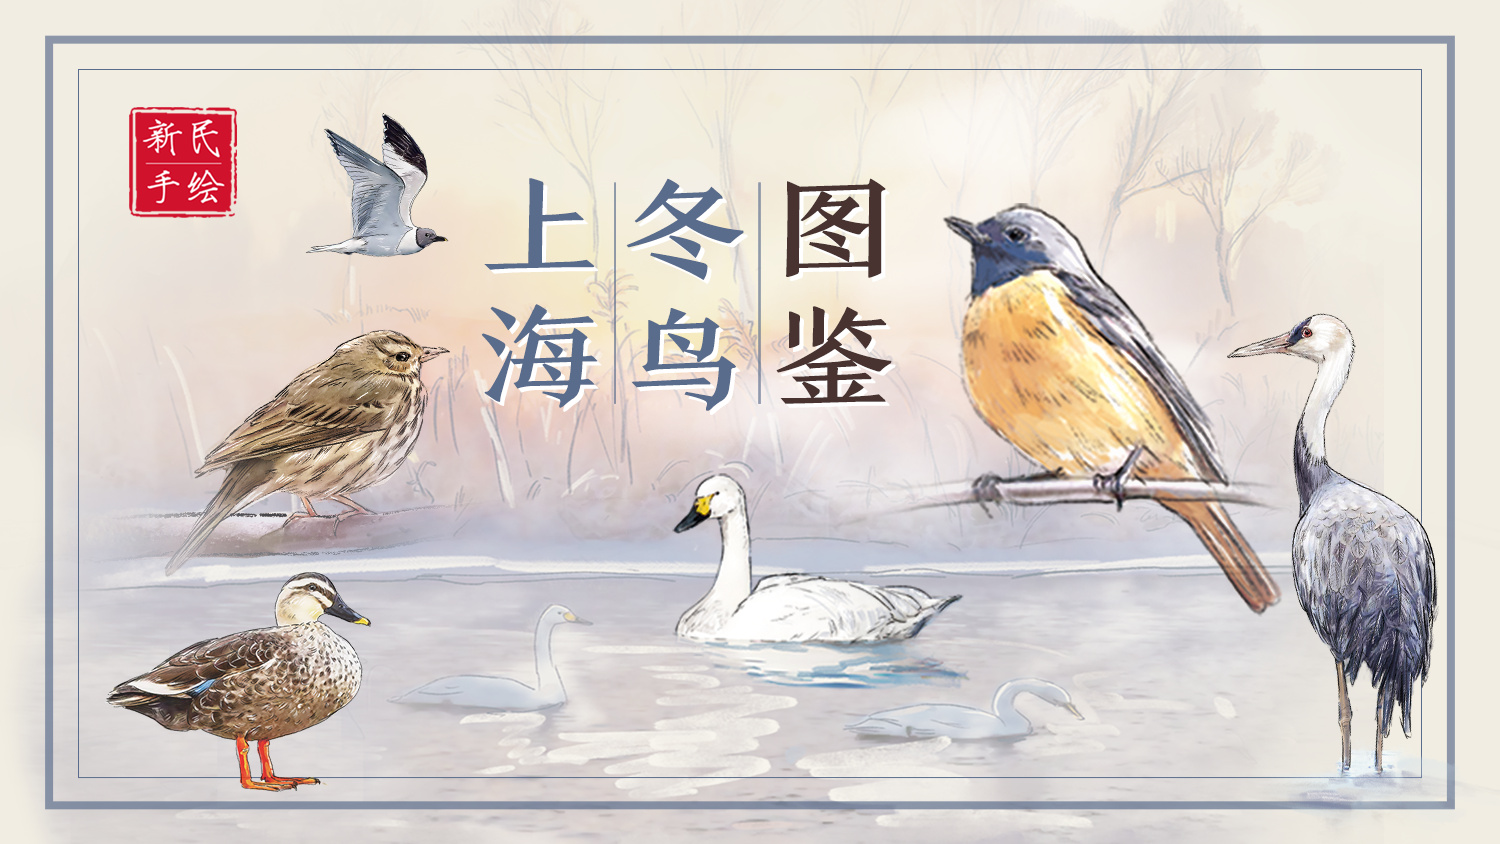 上海冬鸟图鉴